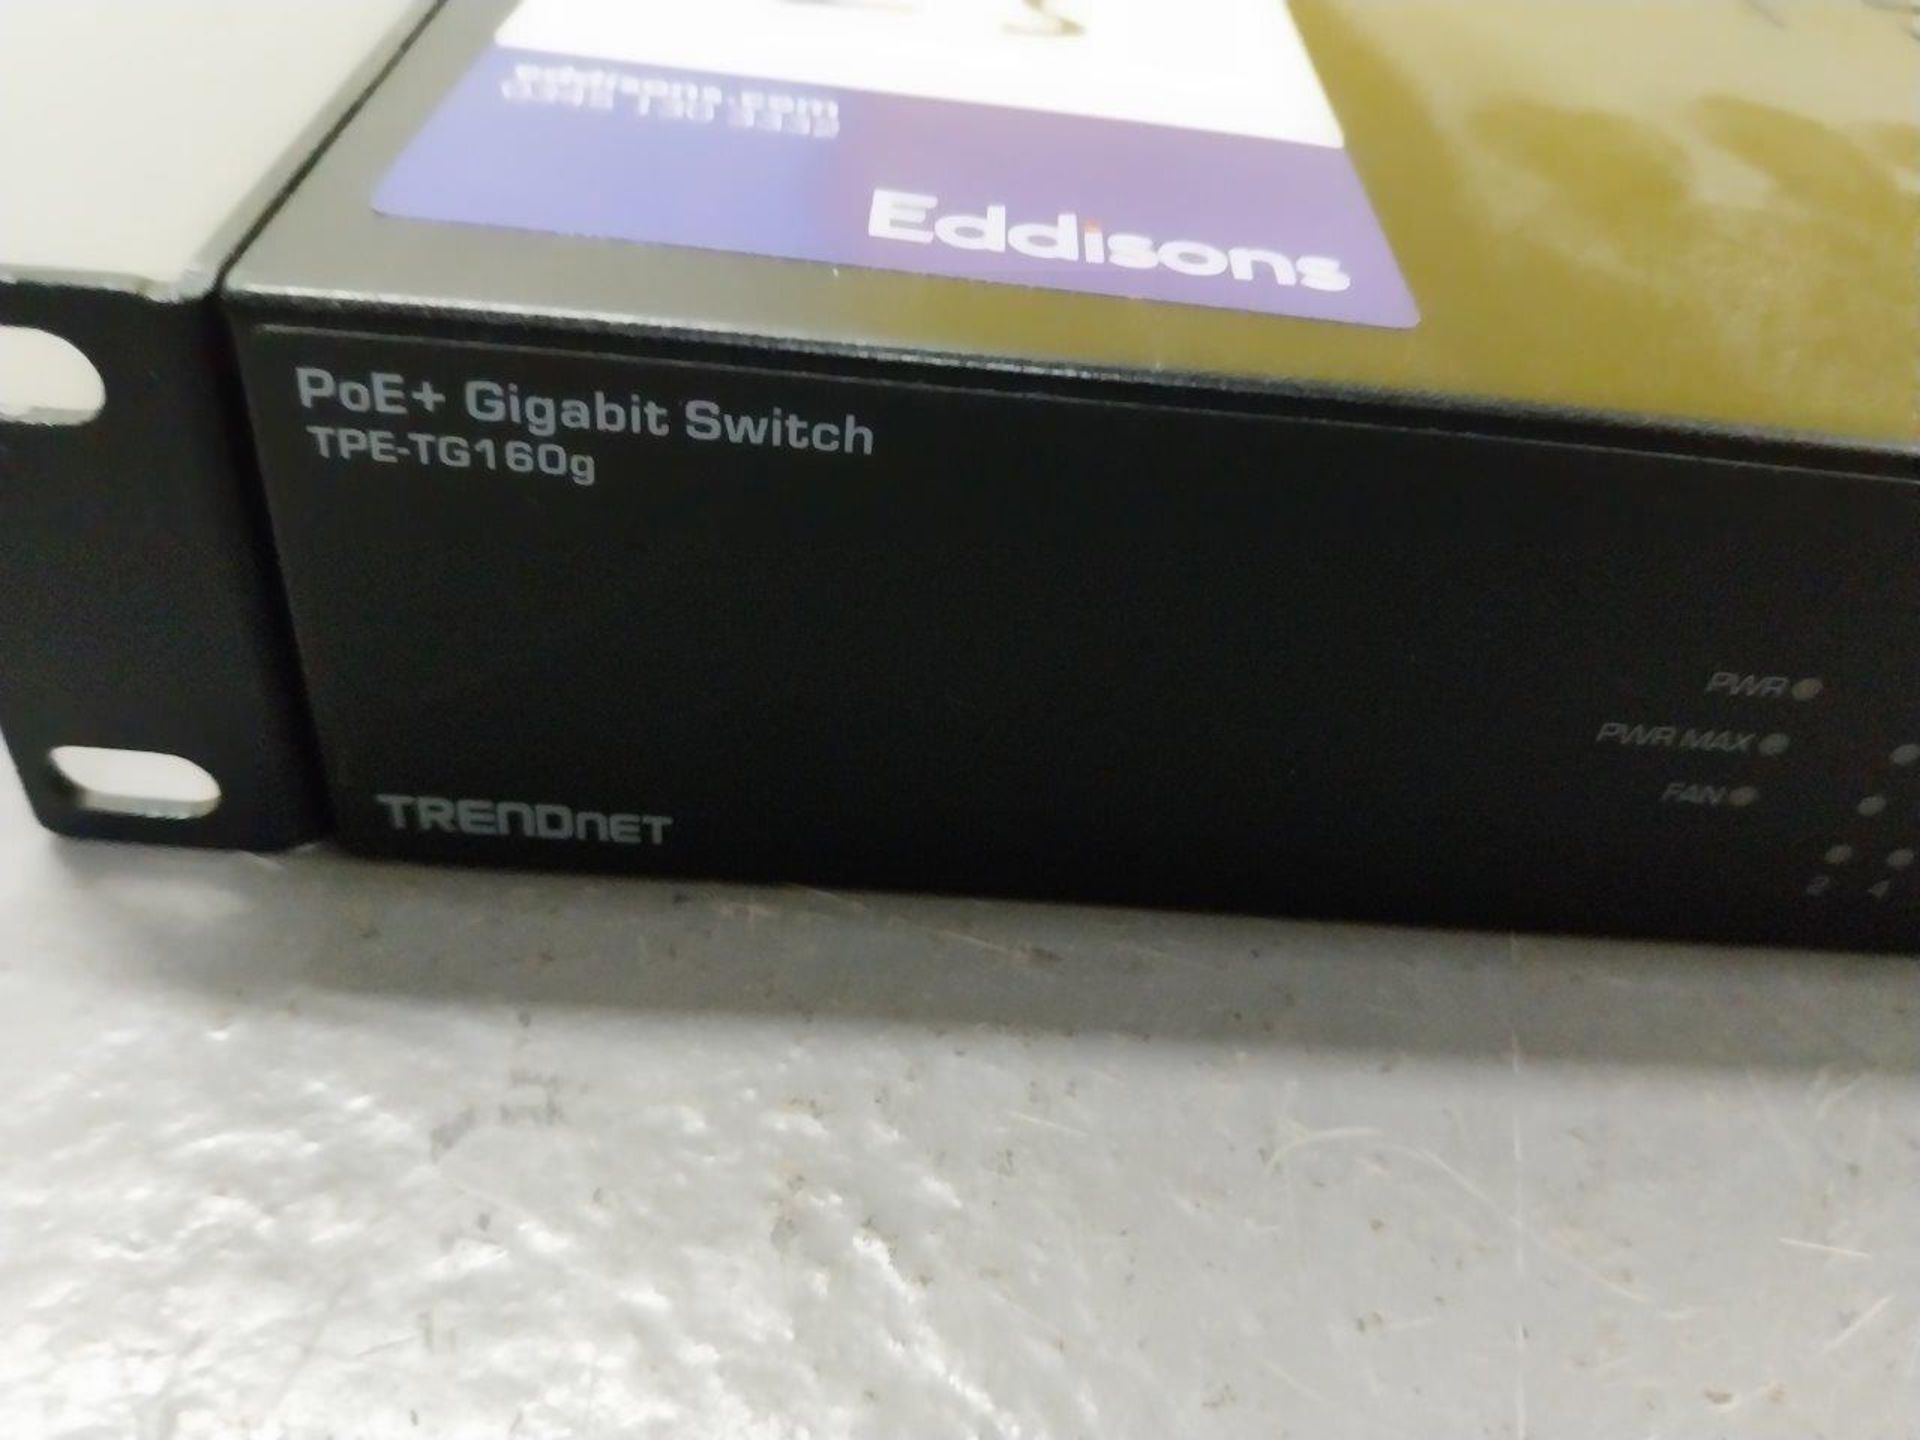 TRENDNET TPE-TG160g PoE+ Gigabit Switch - Image 2 of 4